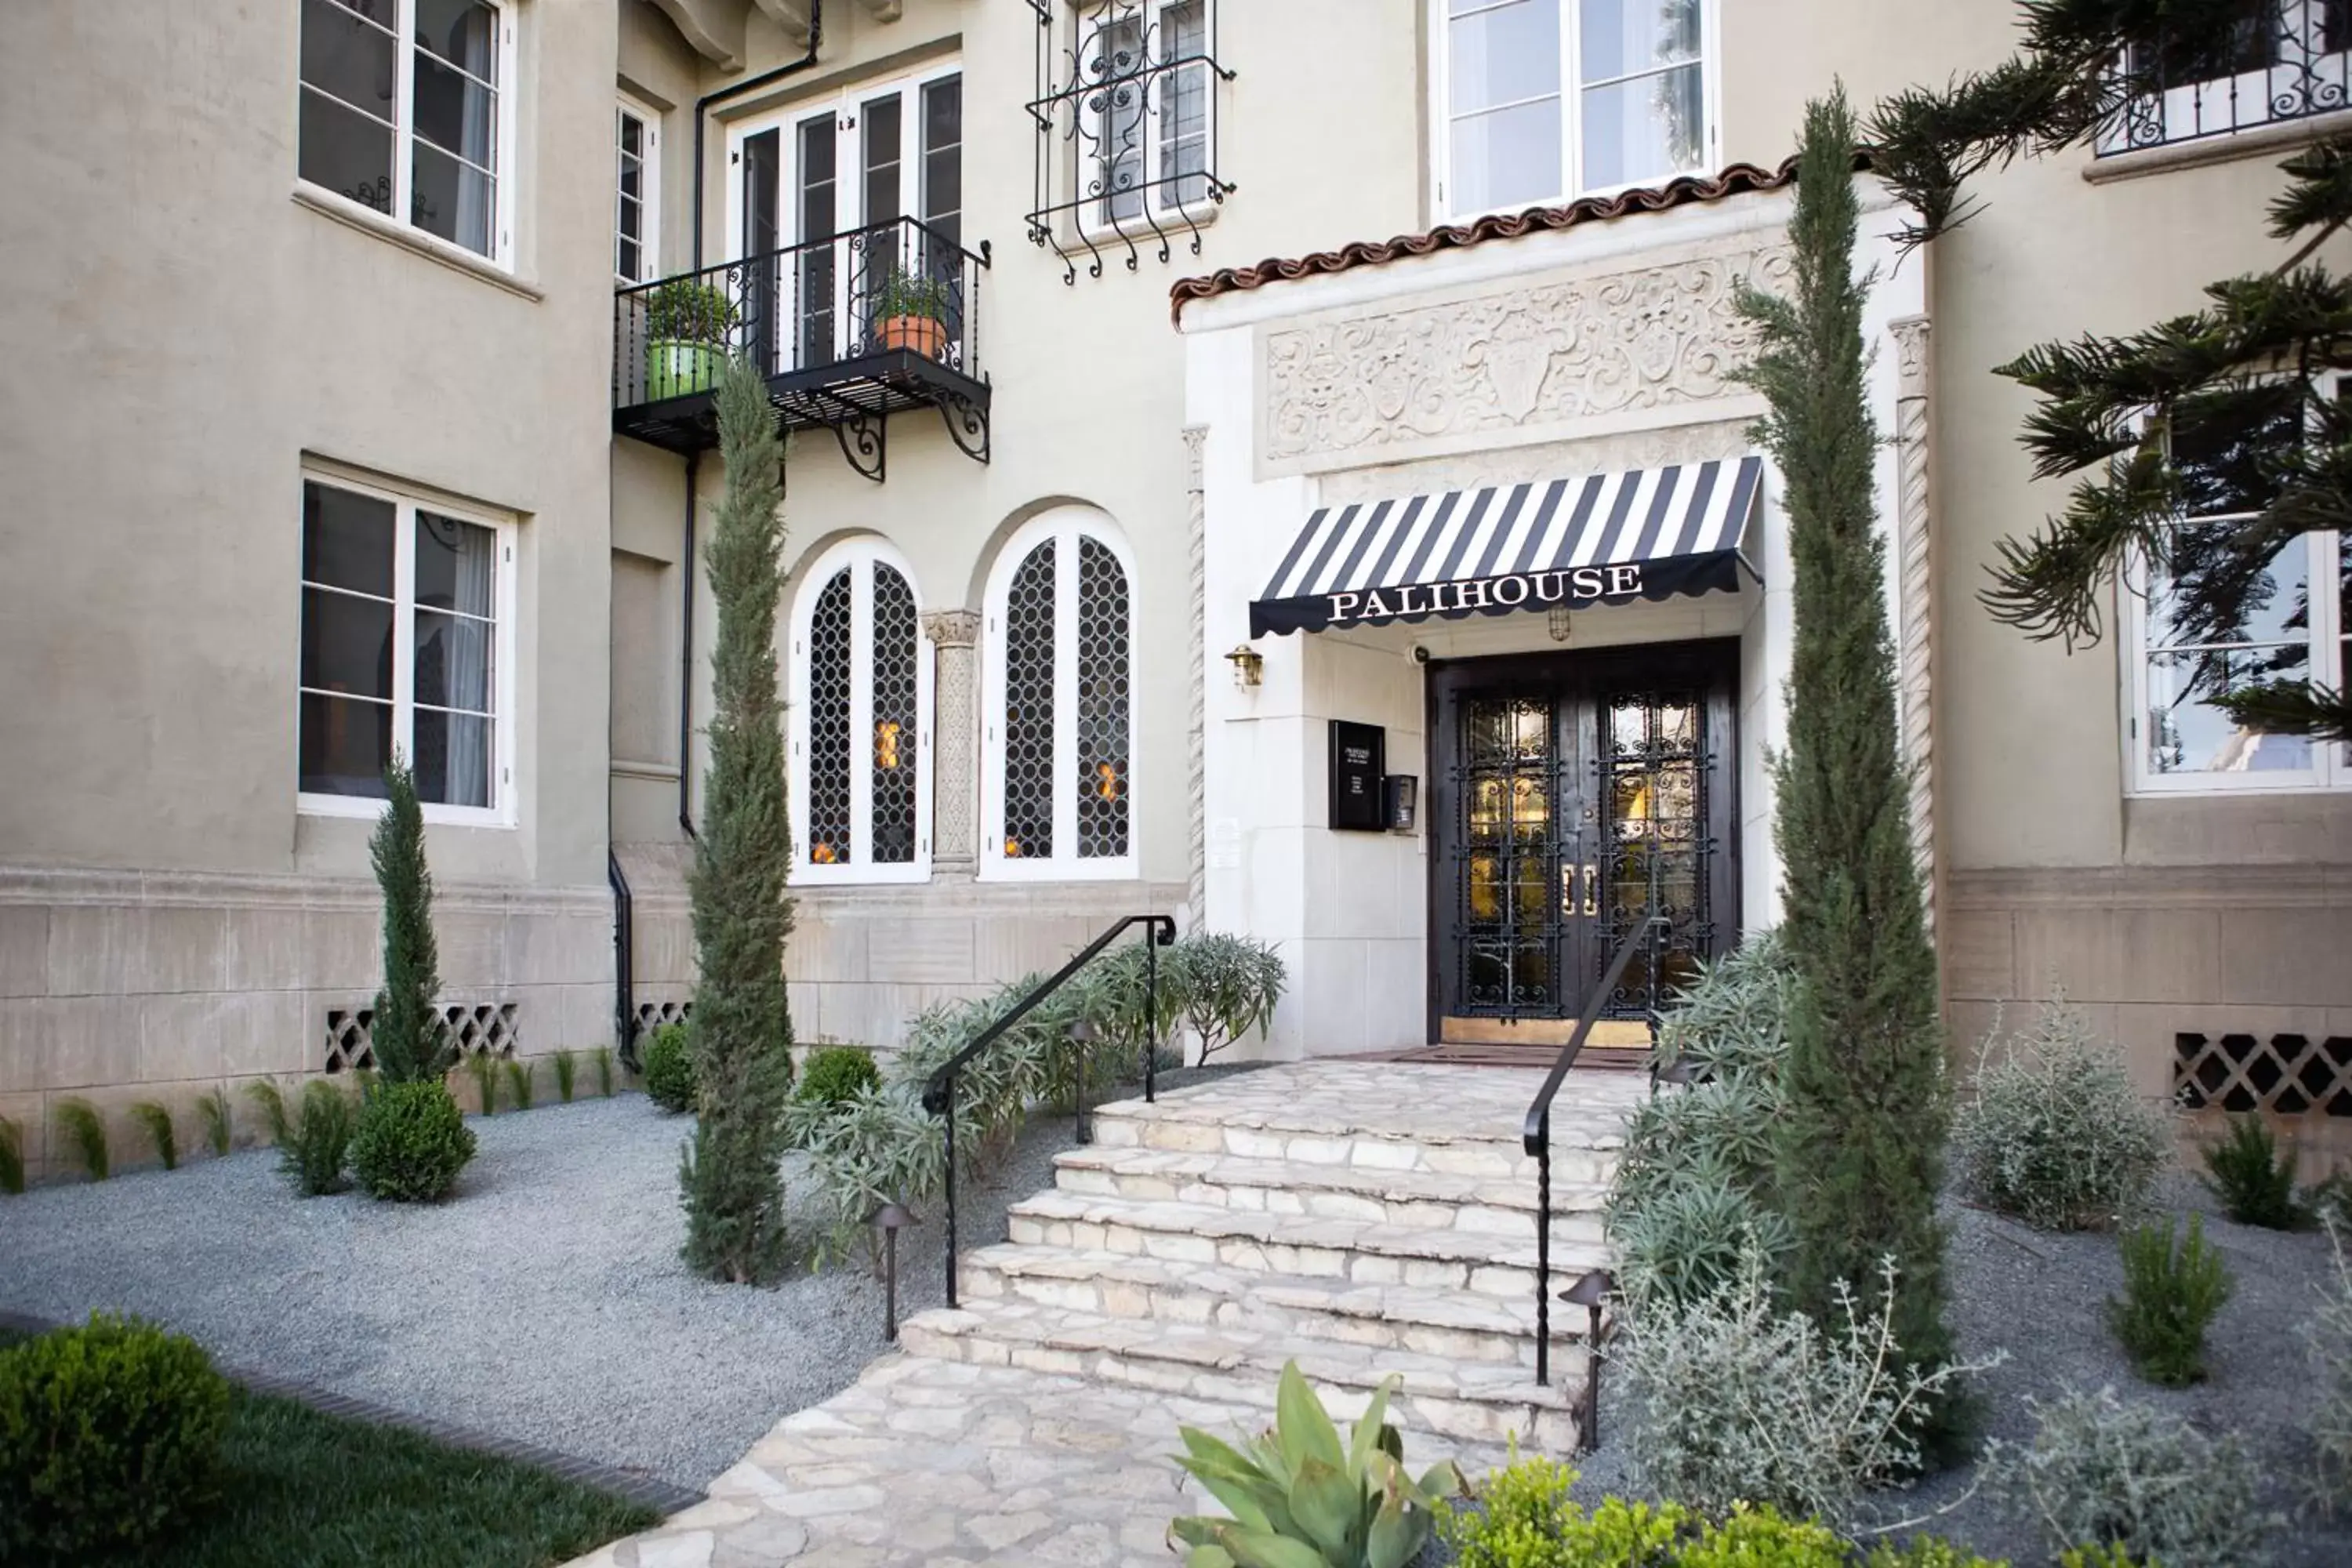 Facade/entrance, Property Building in Palihouse Santa Monica